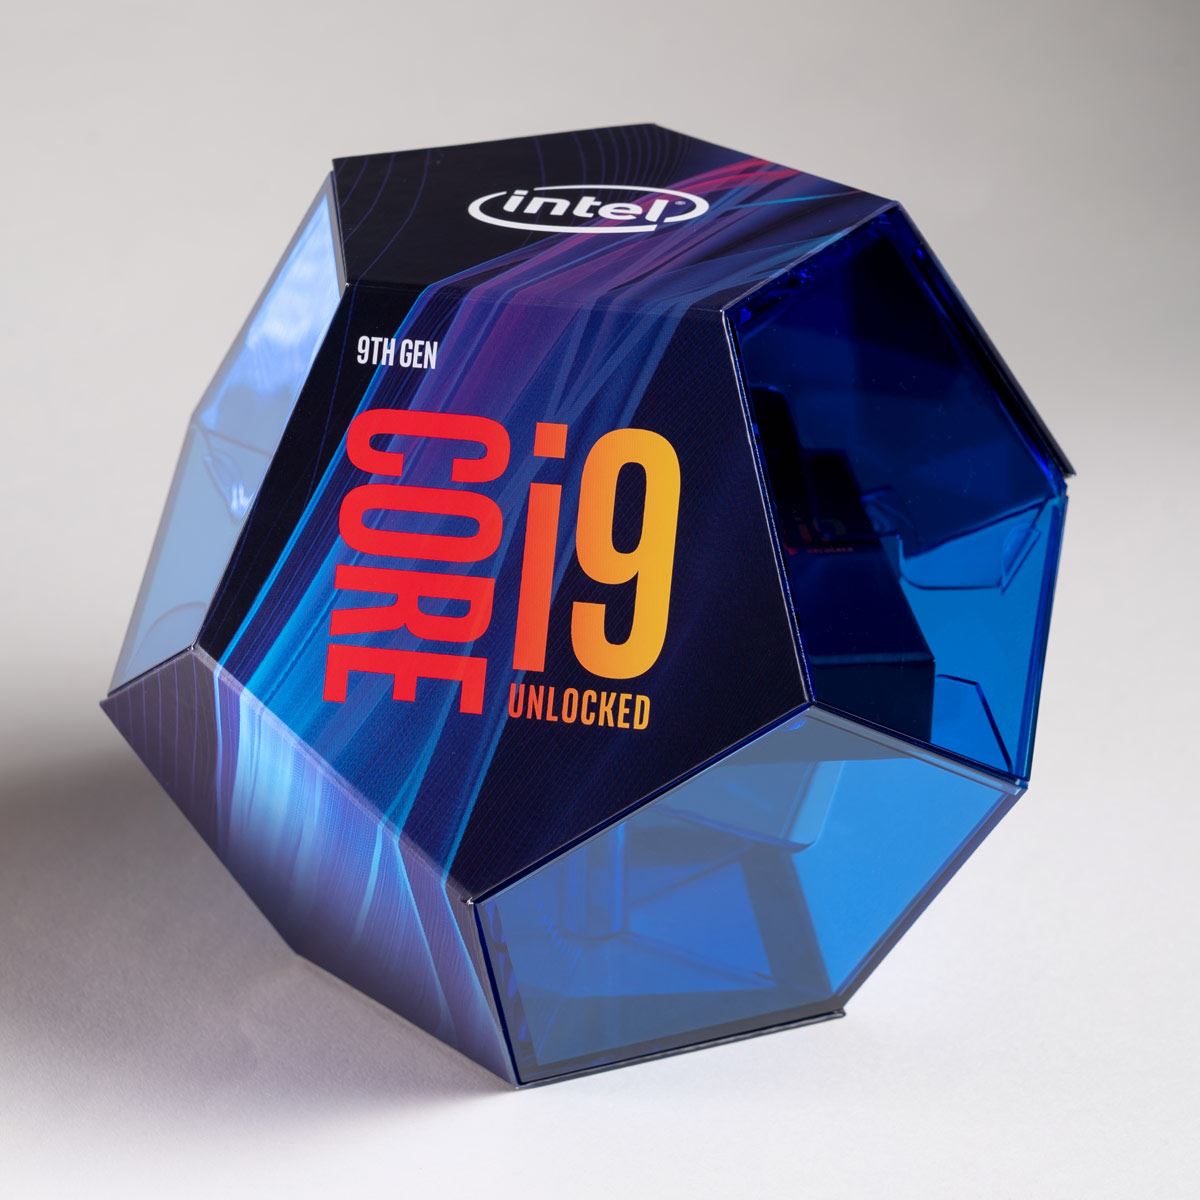 インテルが「Core i9-9900K」を含む第9世代Coreプロセッサーを正式発表